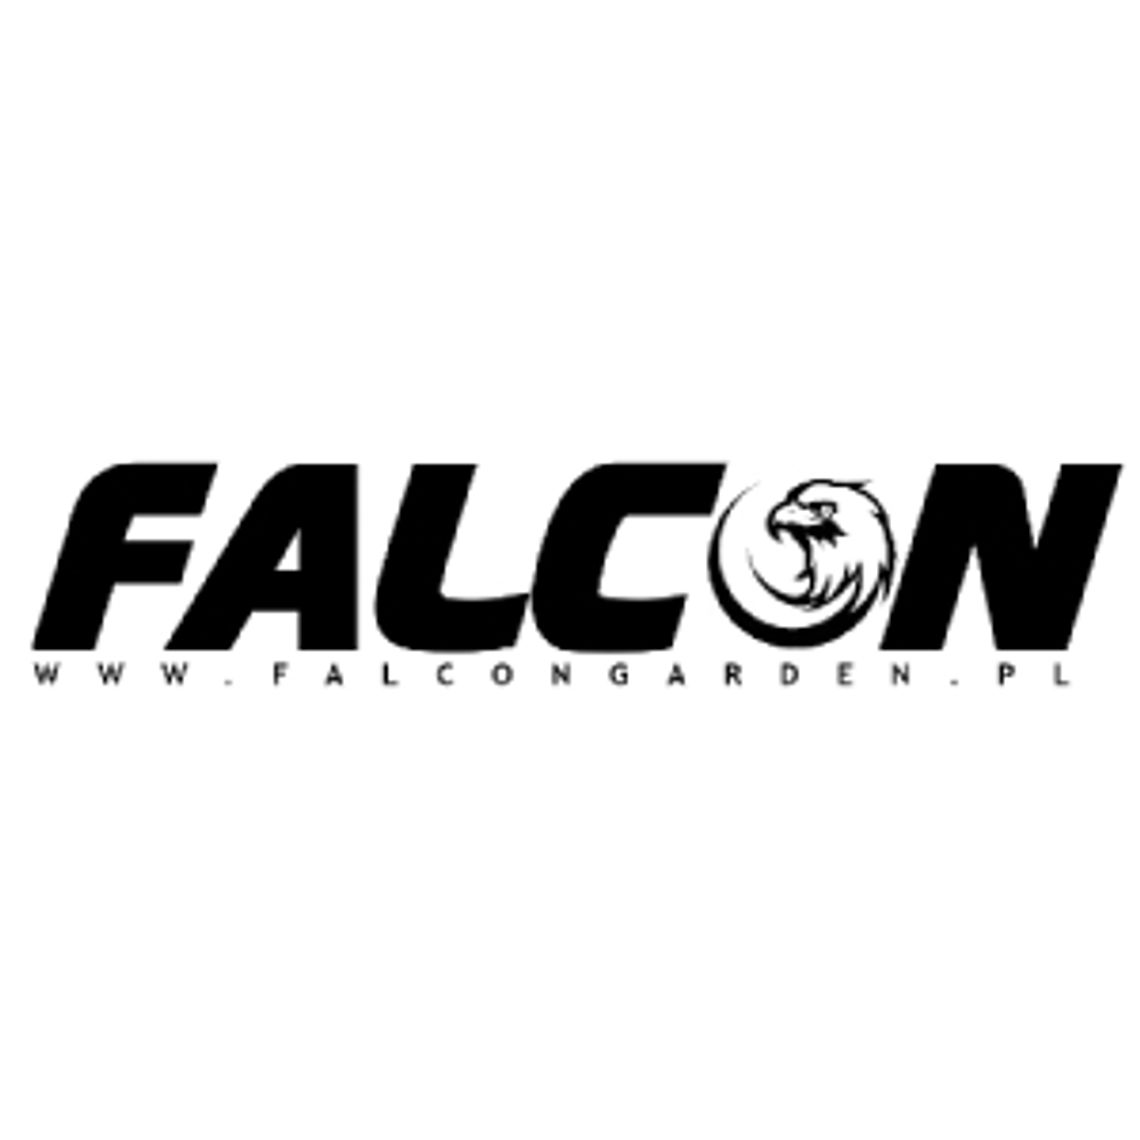 Gadżety motoryzacyjne - Falcon Garden